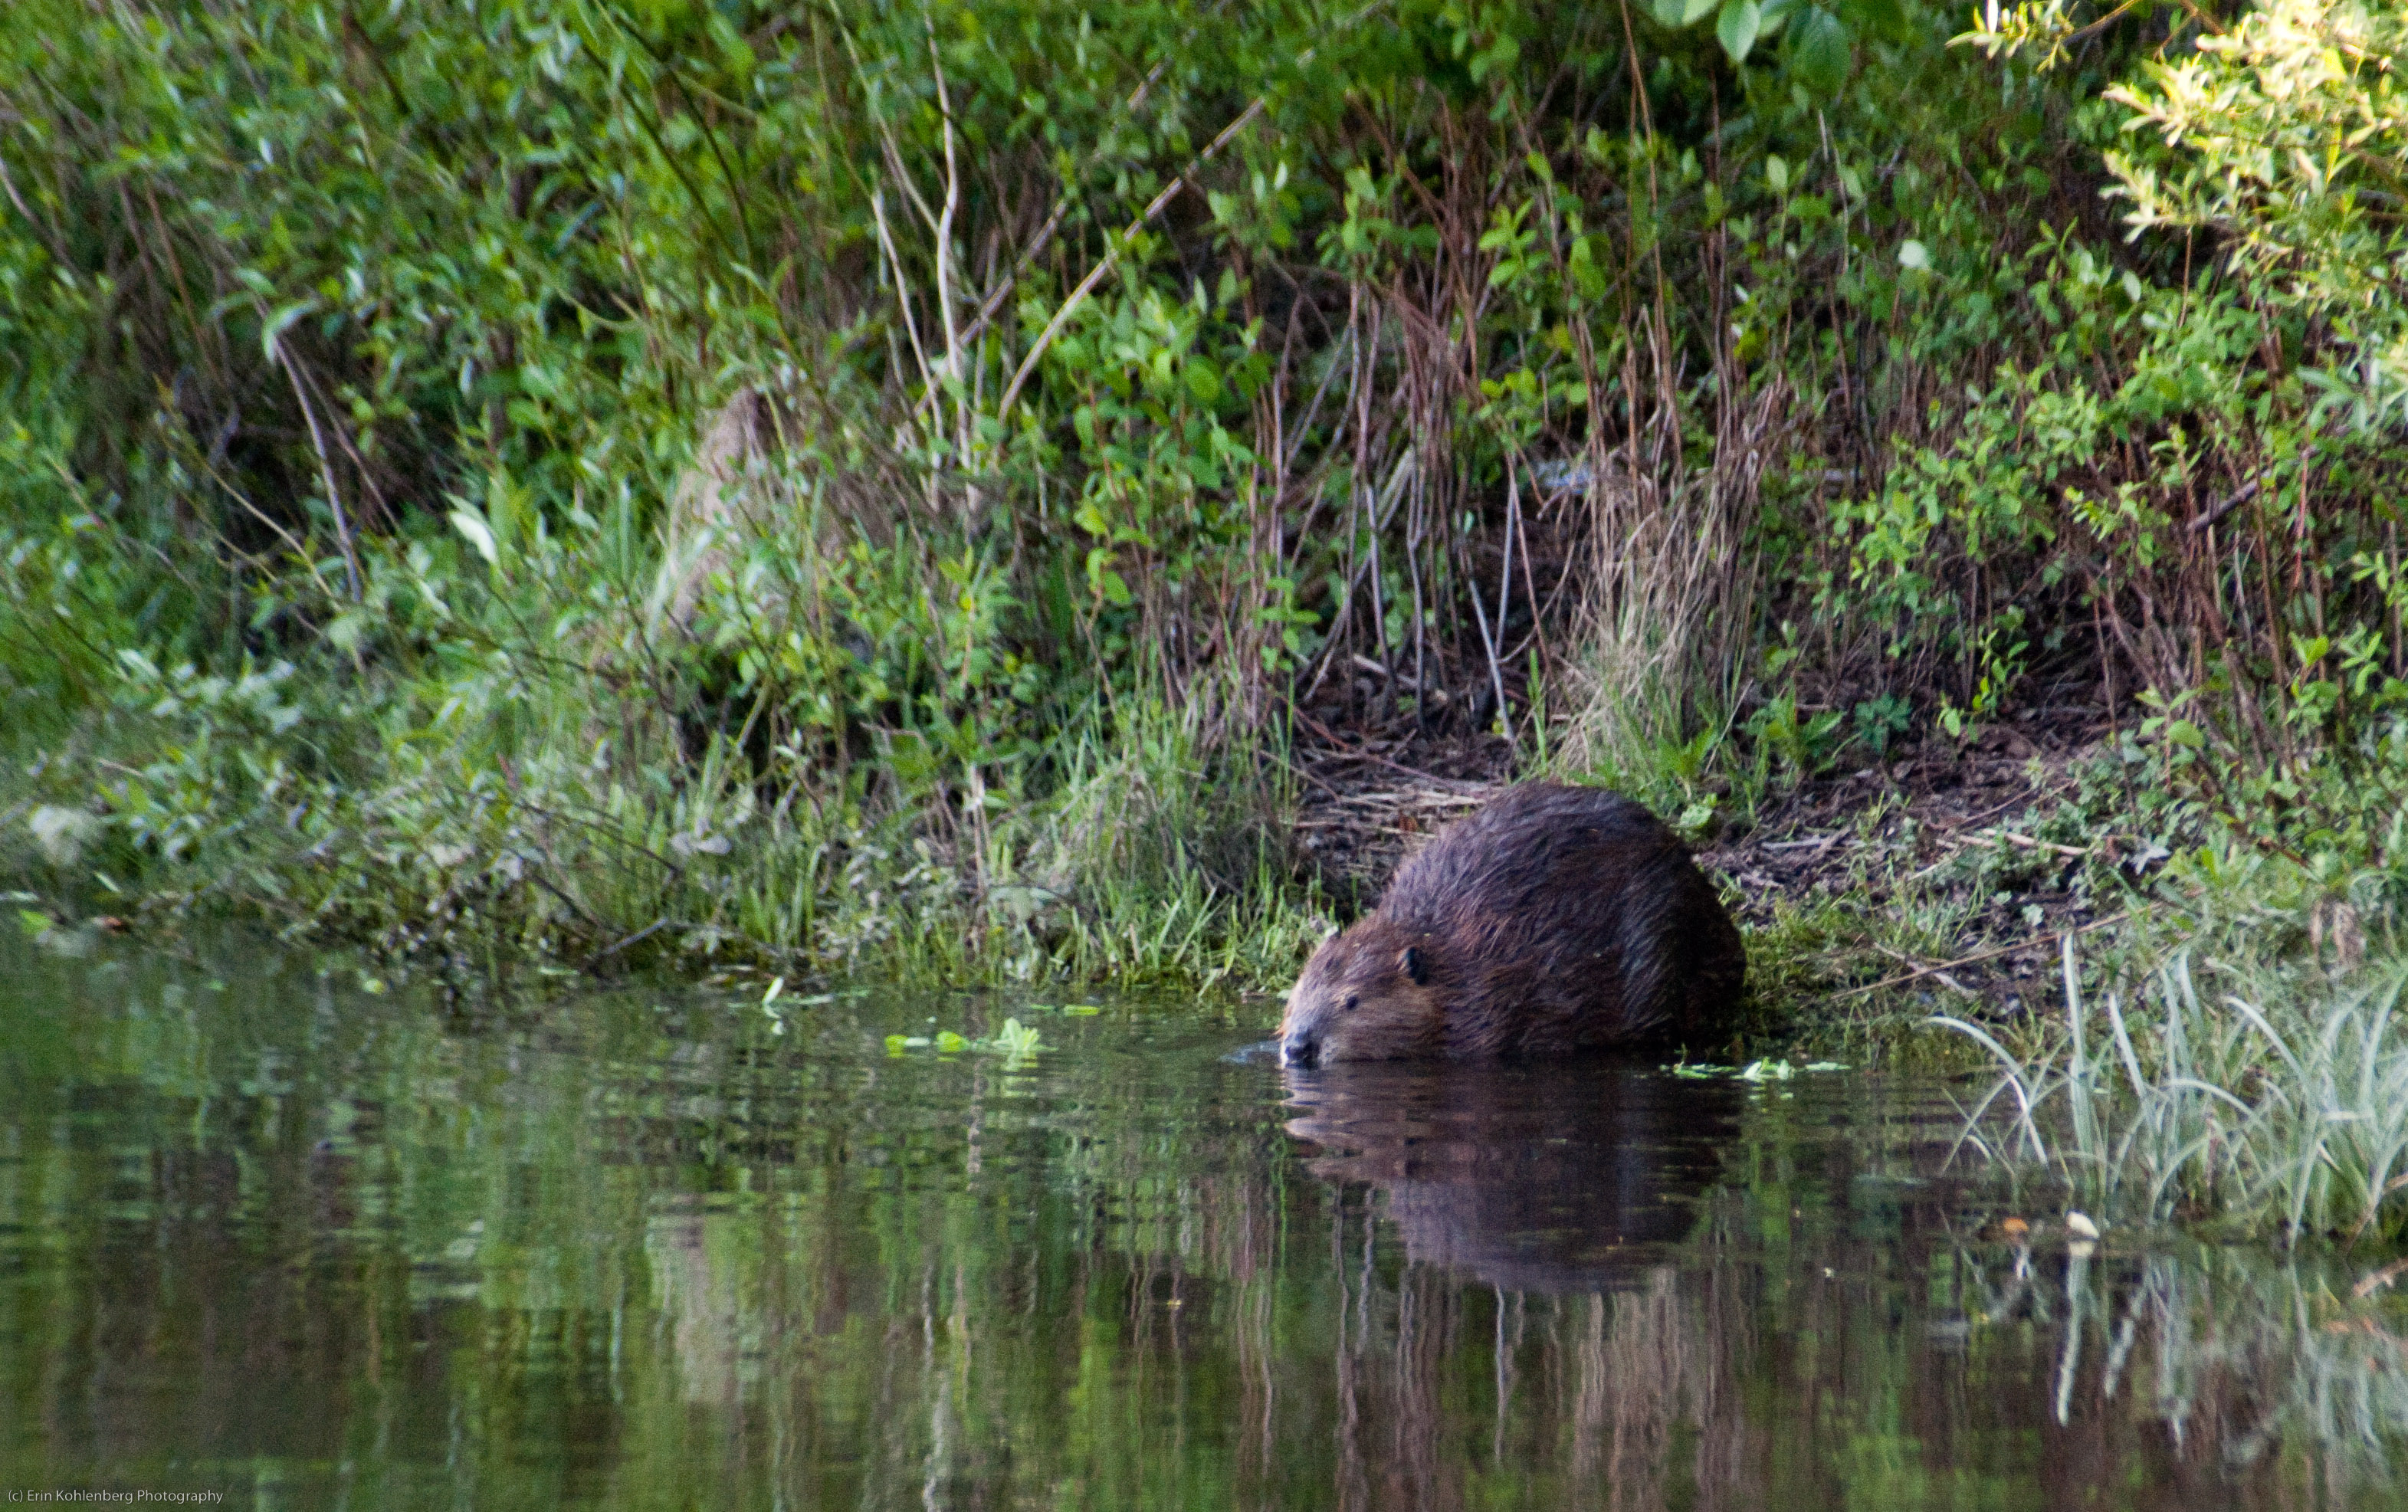 A beaver. Photo by Erin Kohlenberg, Flickr